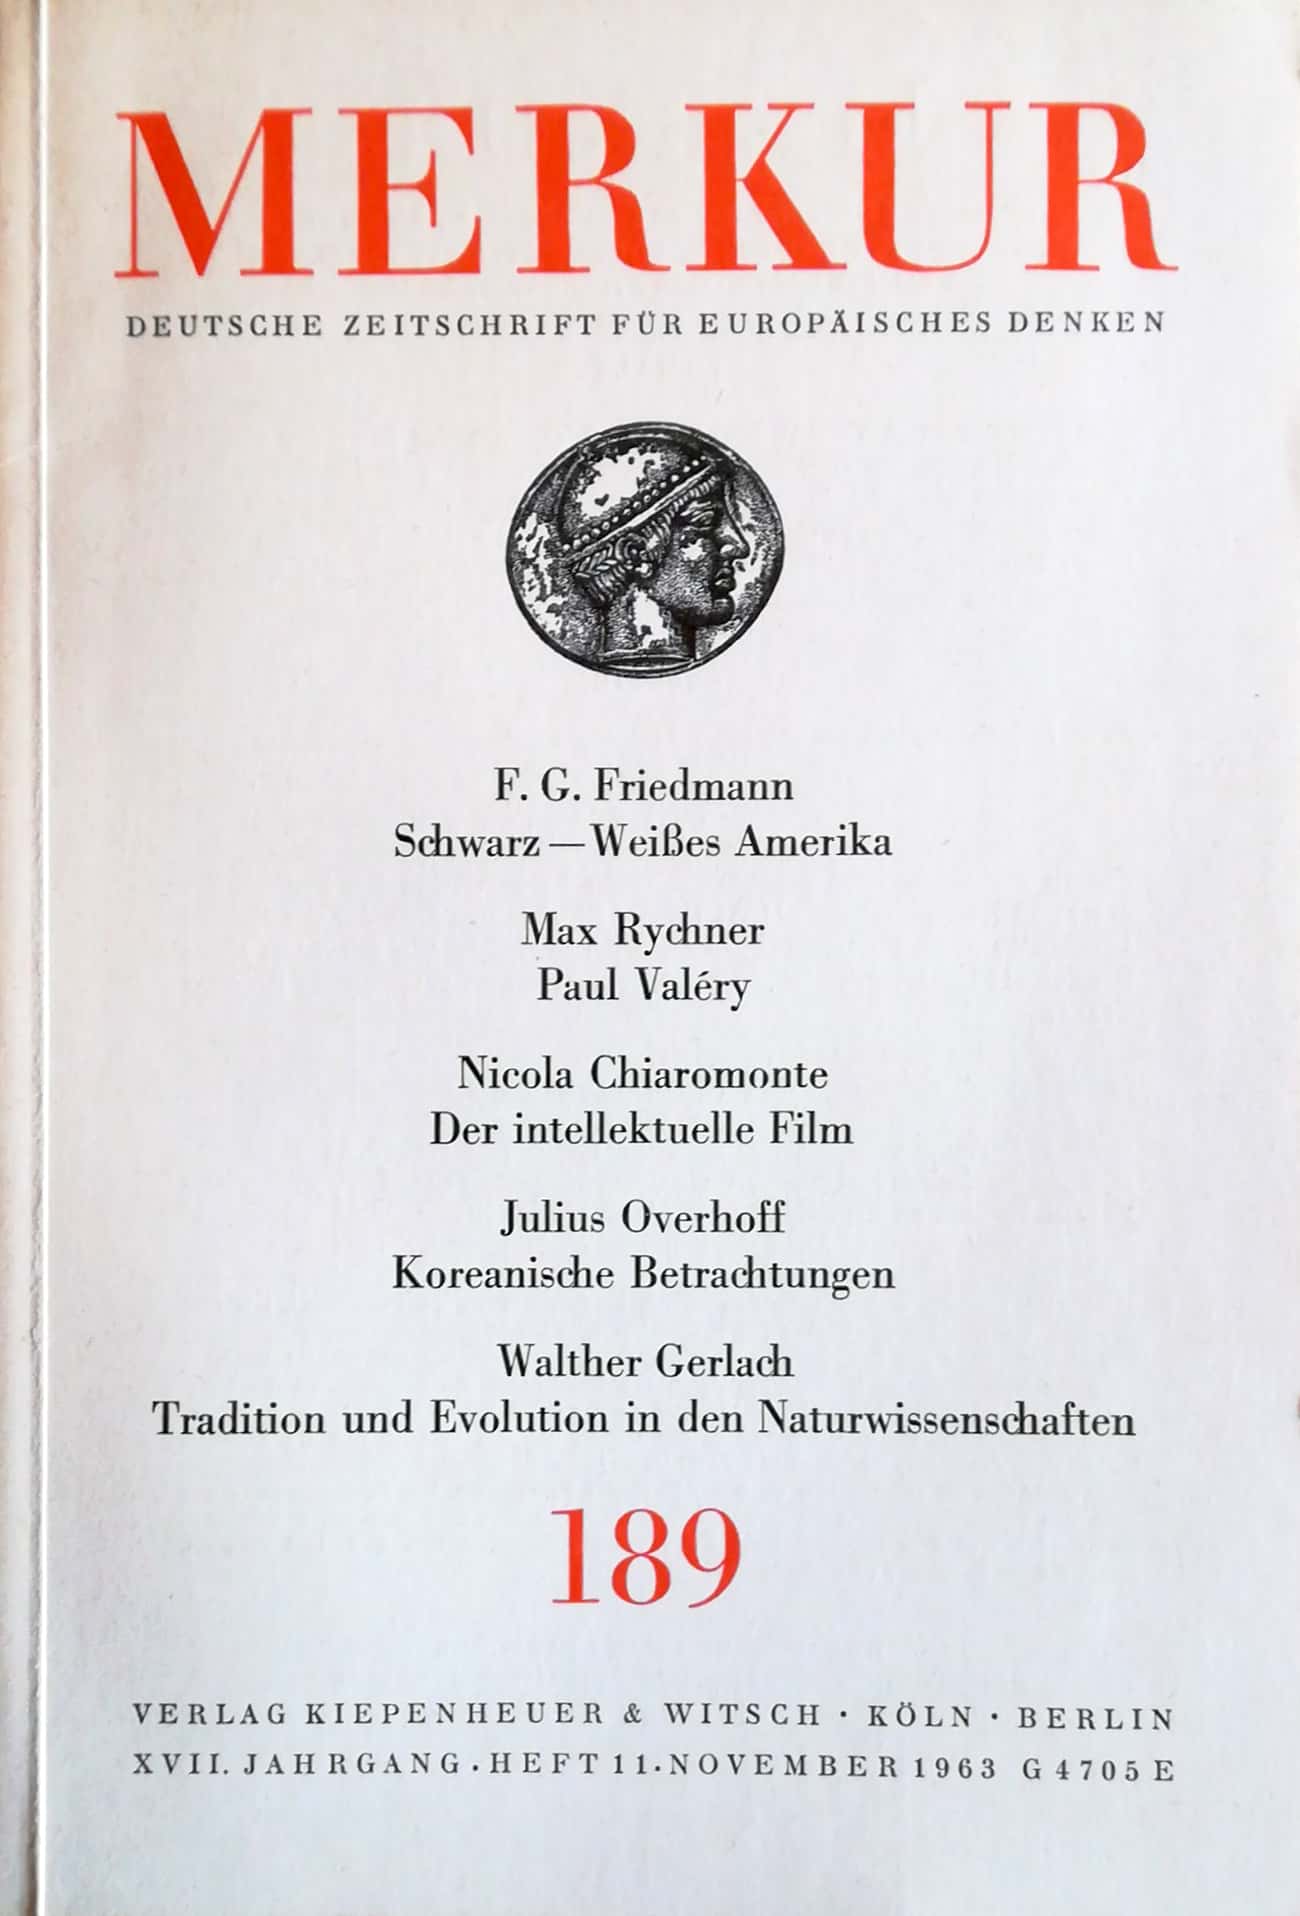 Merkur. Deutsche Zeitschrift für europäisches Denken. XVII. Jahrgang, Heft 11, November 1963 (Nr. 189). - Paeschke, Hans (Hrsg)